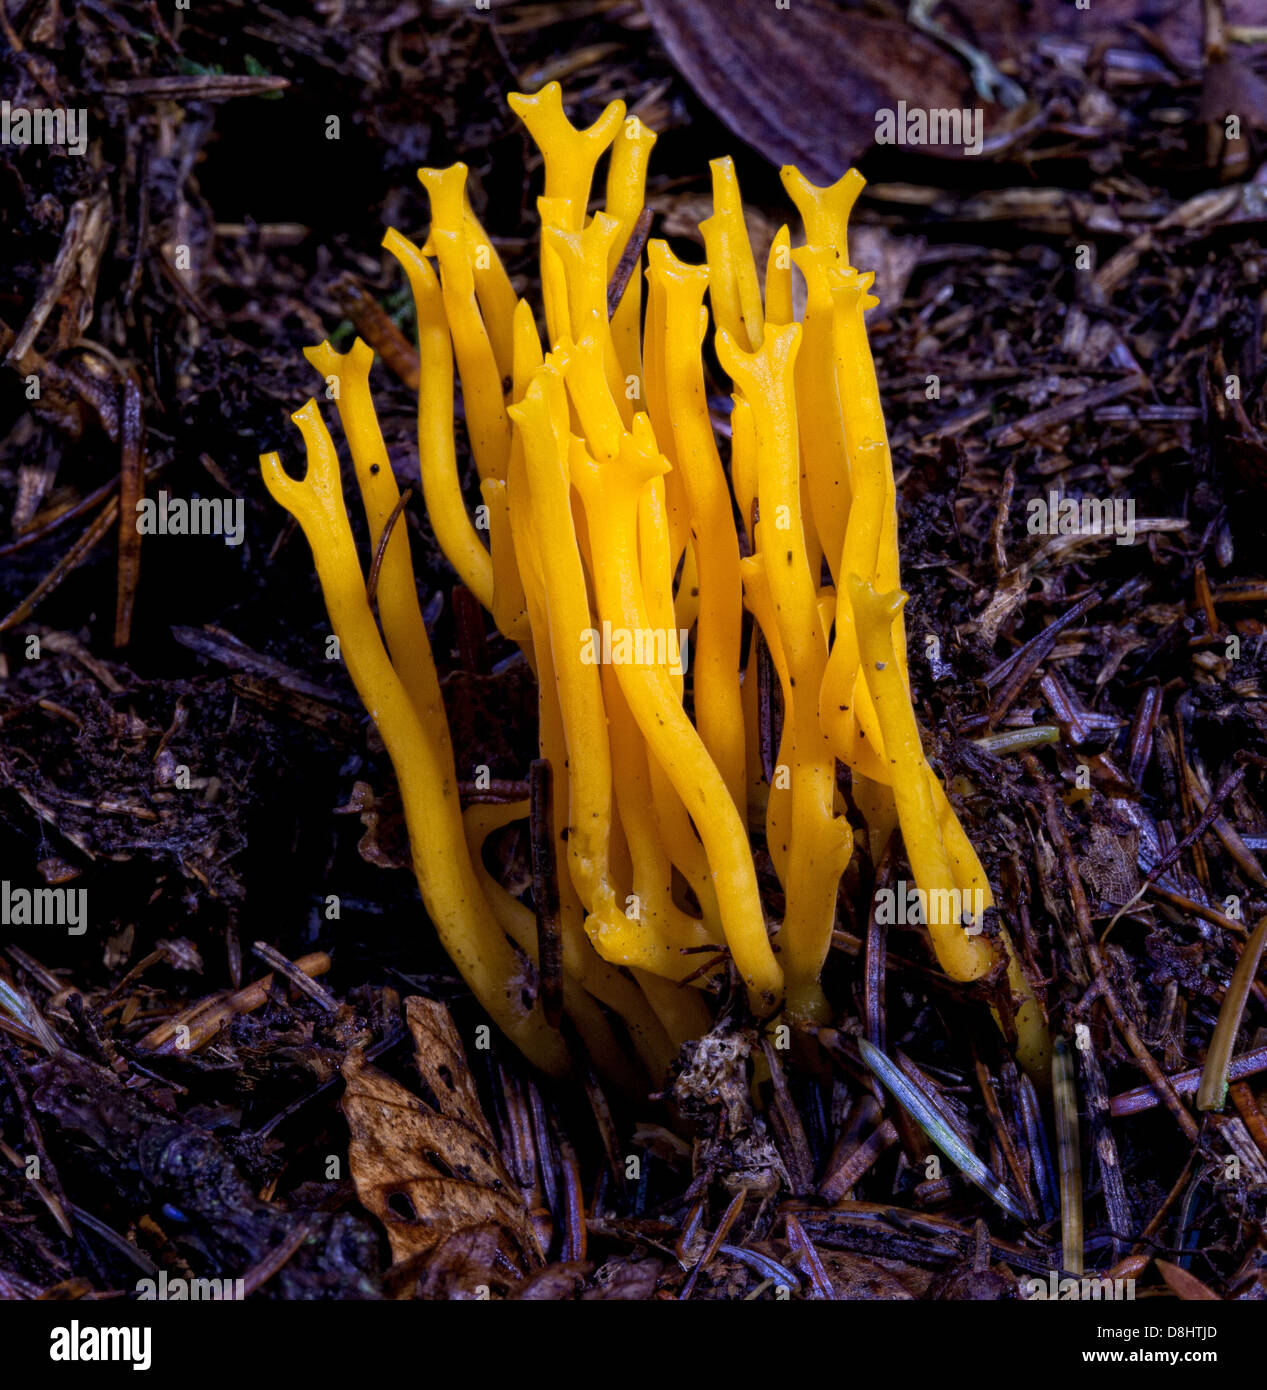 Calocera Viscsa, gemeinhin als gelber Stagshorn-Pilz bekannt, der in Waldgebieten in Schottland, Großbritannien, vorkommt Stockfoto